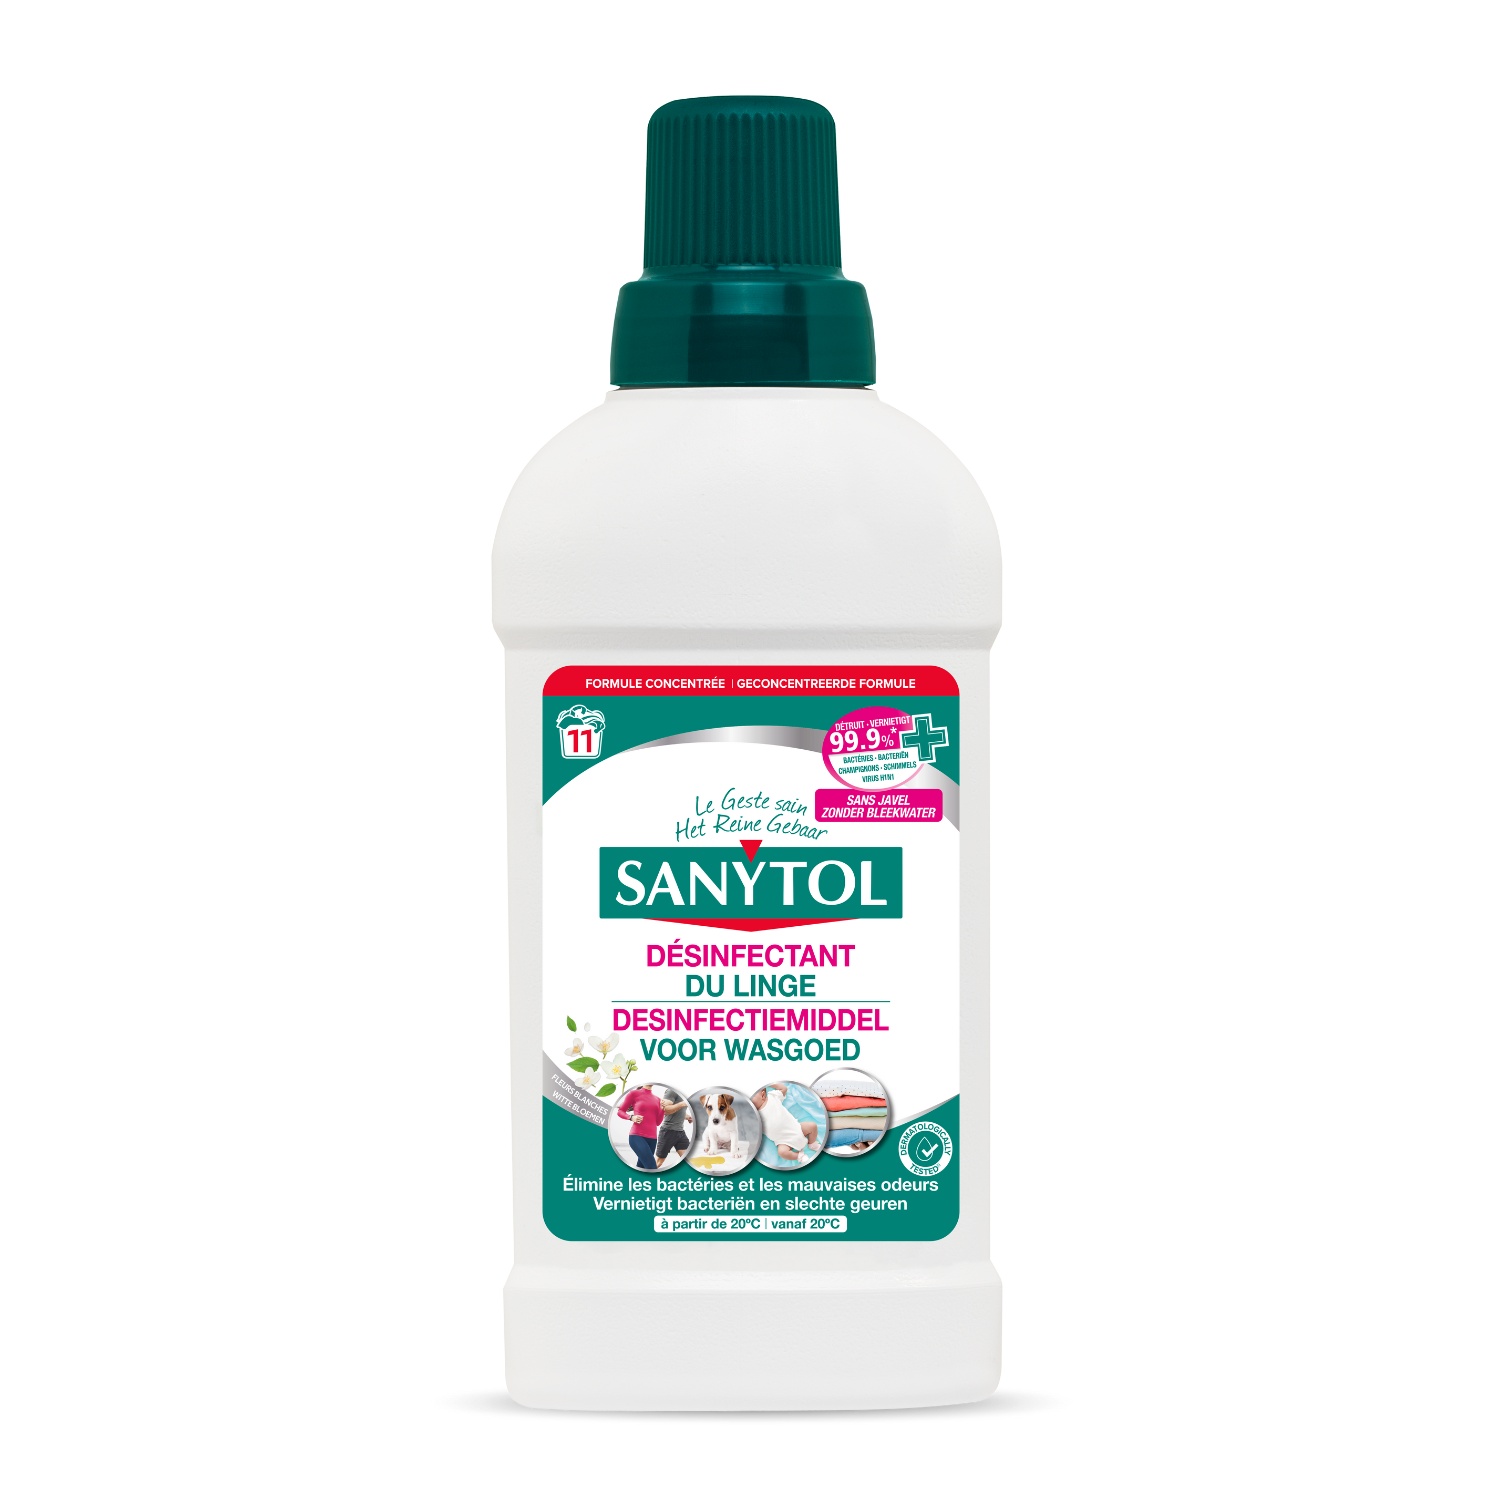 Sanytol, l'expert de la désinfection sans javel - Sanytol